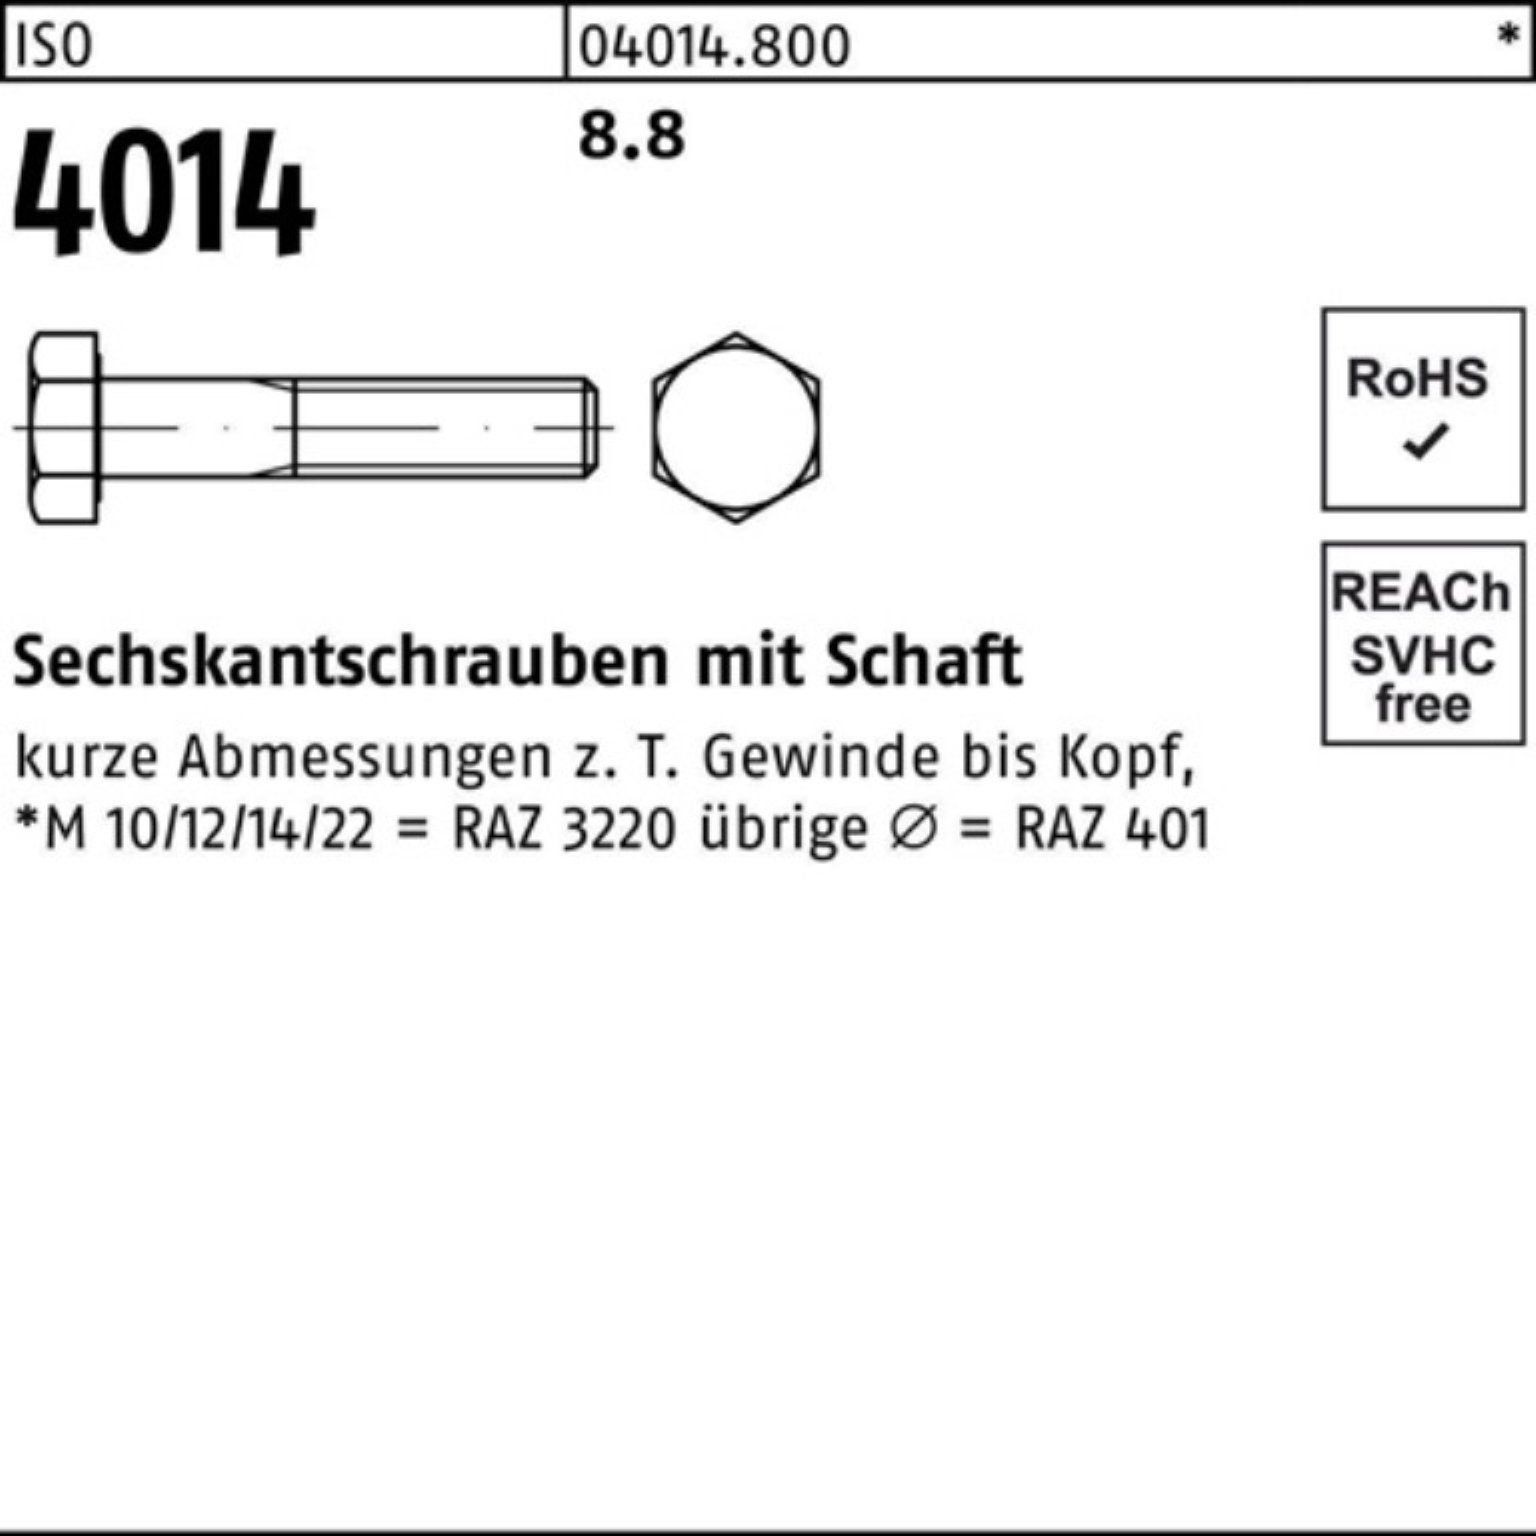 Bufab Sechskantschraube Sechskantschraube 8.8 ISO Schaft Pack M22x ISO 100er 300 Stück 4014 1